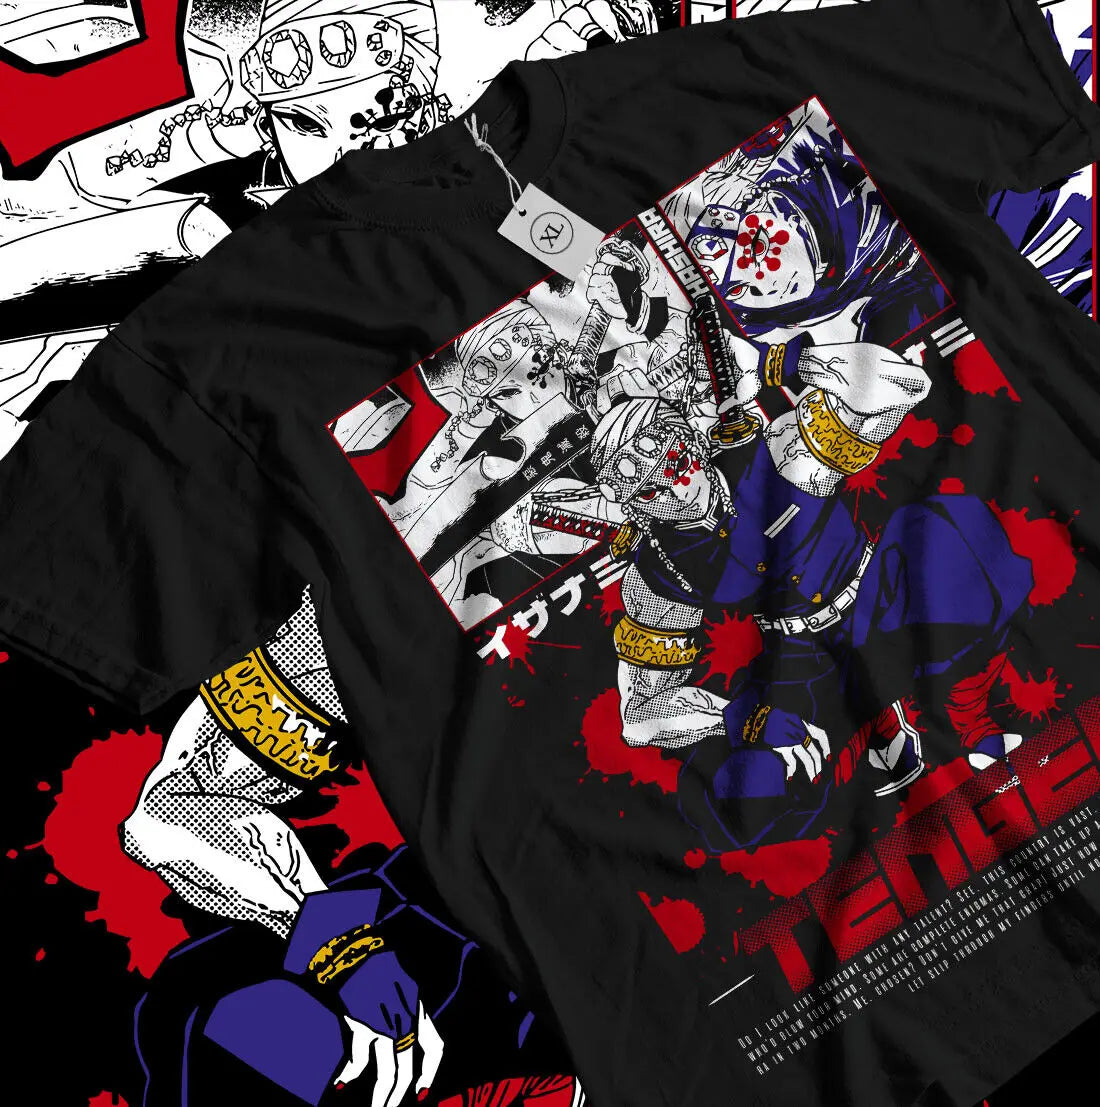 Demon Slayer Tengen Uzui T-Shirt Cotton Anime Shirt